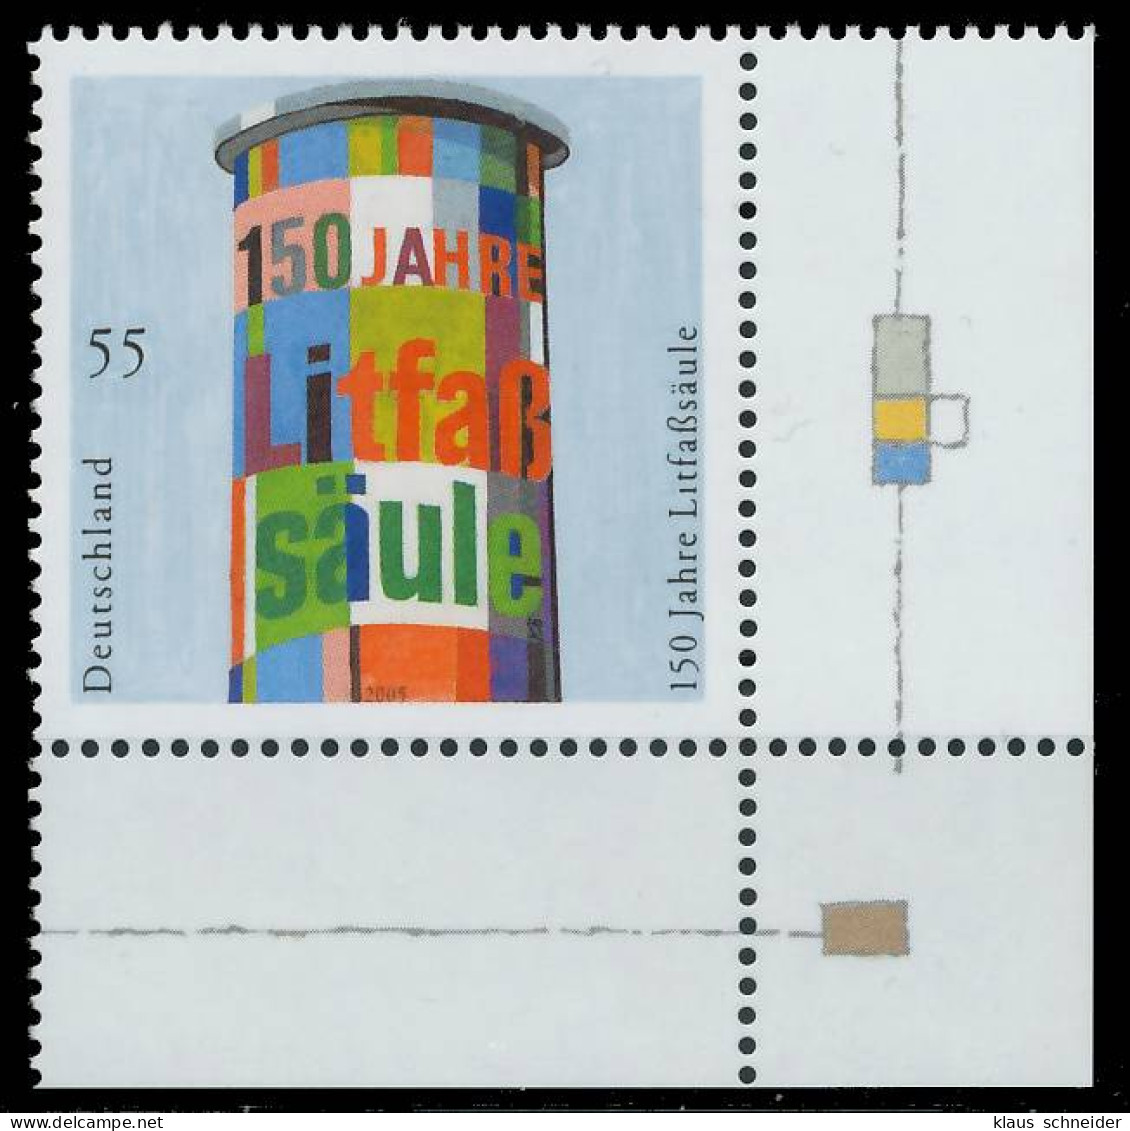 BRD BUND 2005 Nr 2444 Postfrisch ECKE-URE X397F82 - Unused Stamps